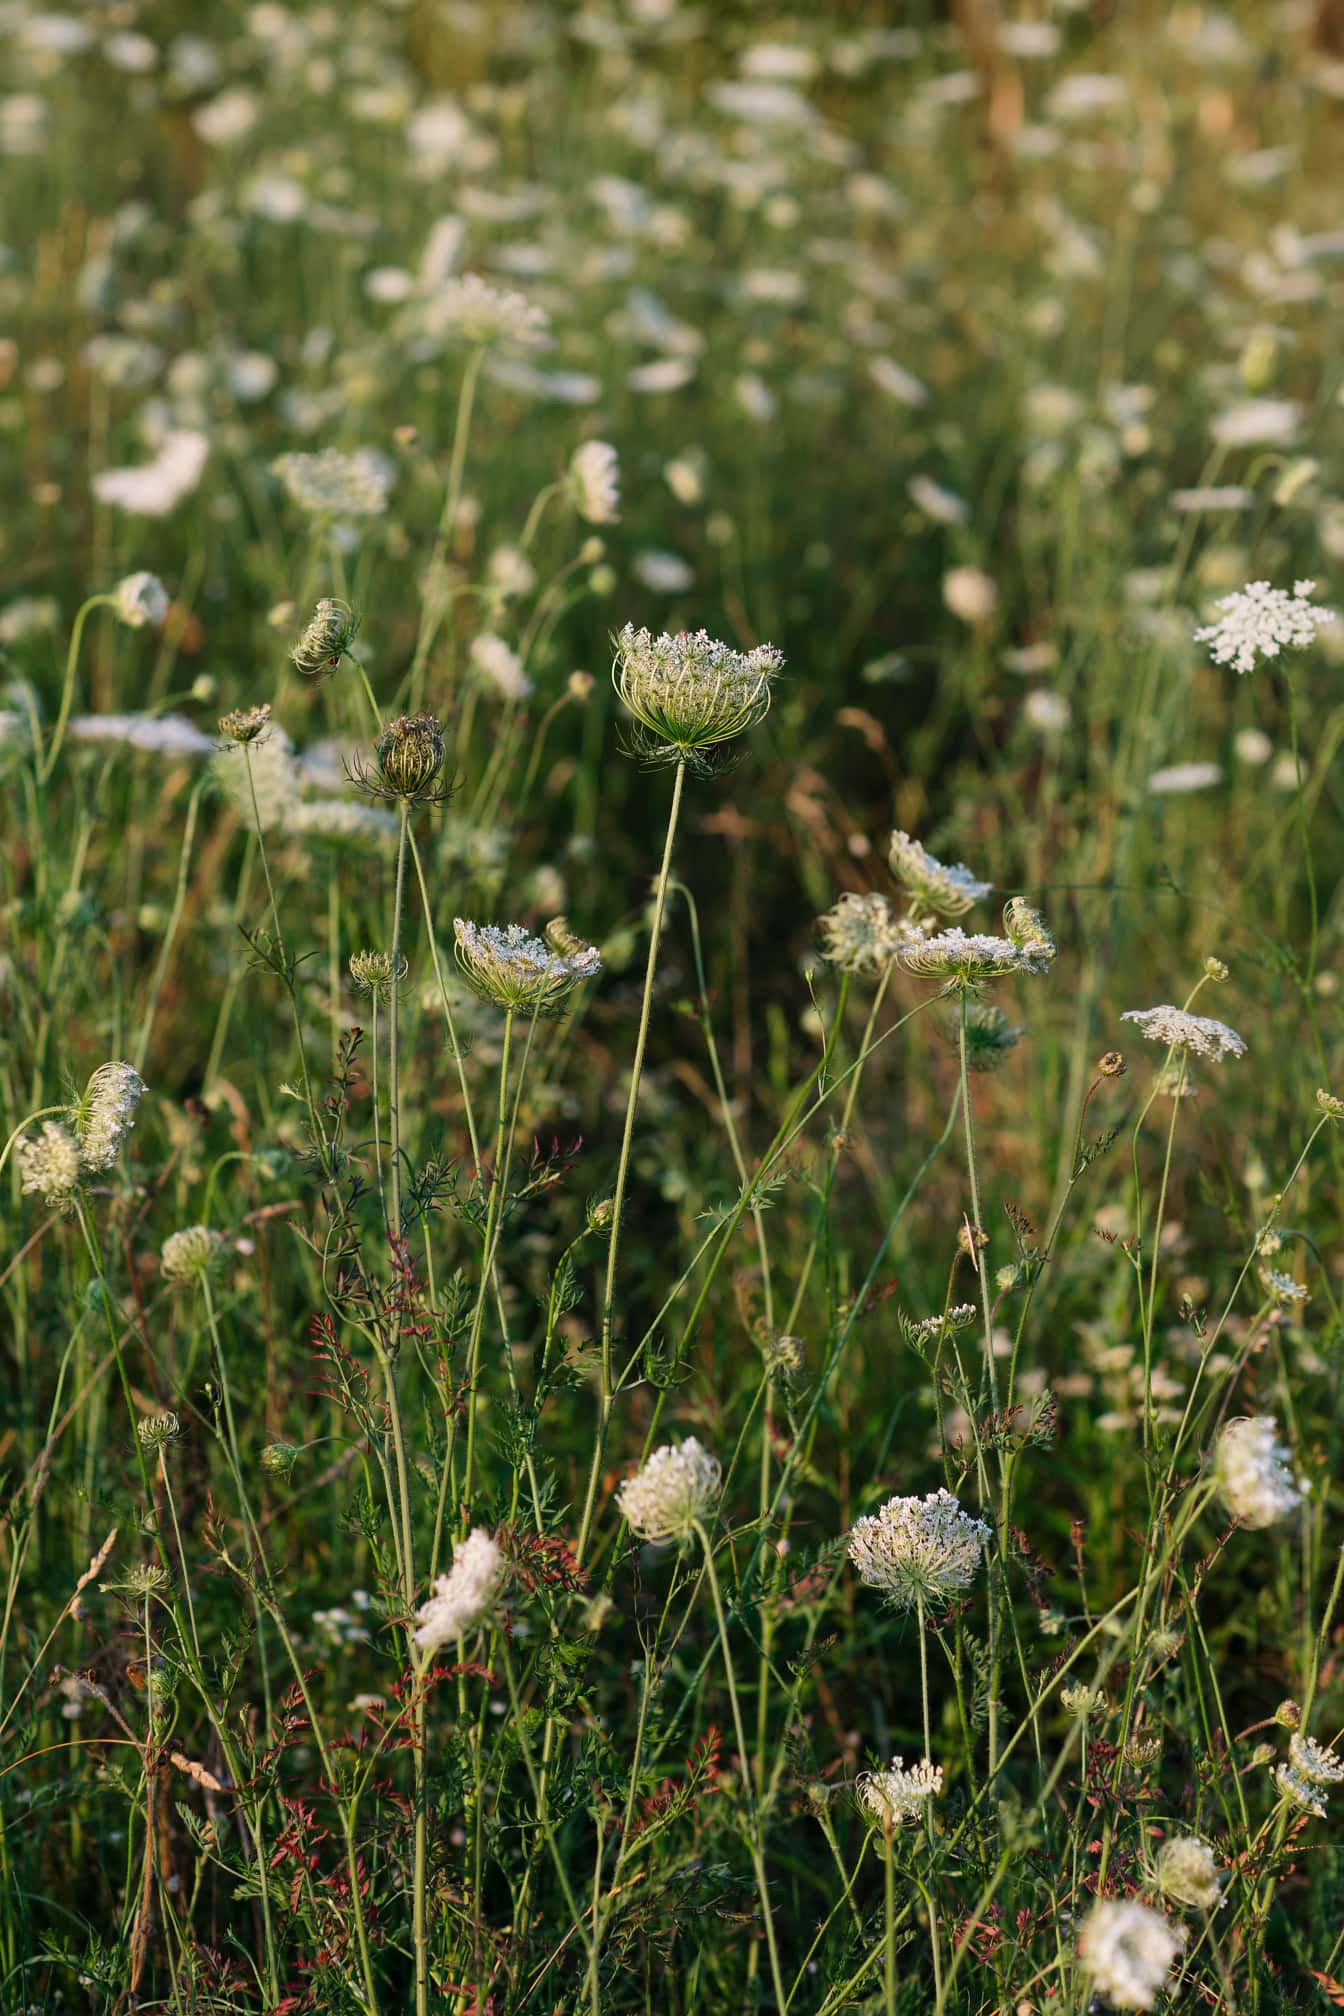 İlkbaharda çayırda kır çiçeği beyaz çiçek yabani havuç (Daucus carota)